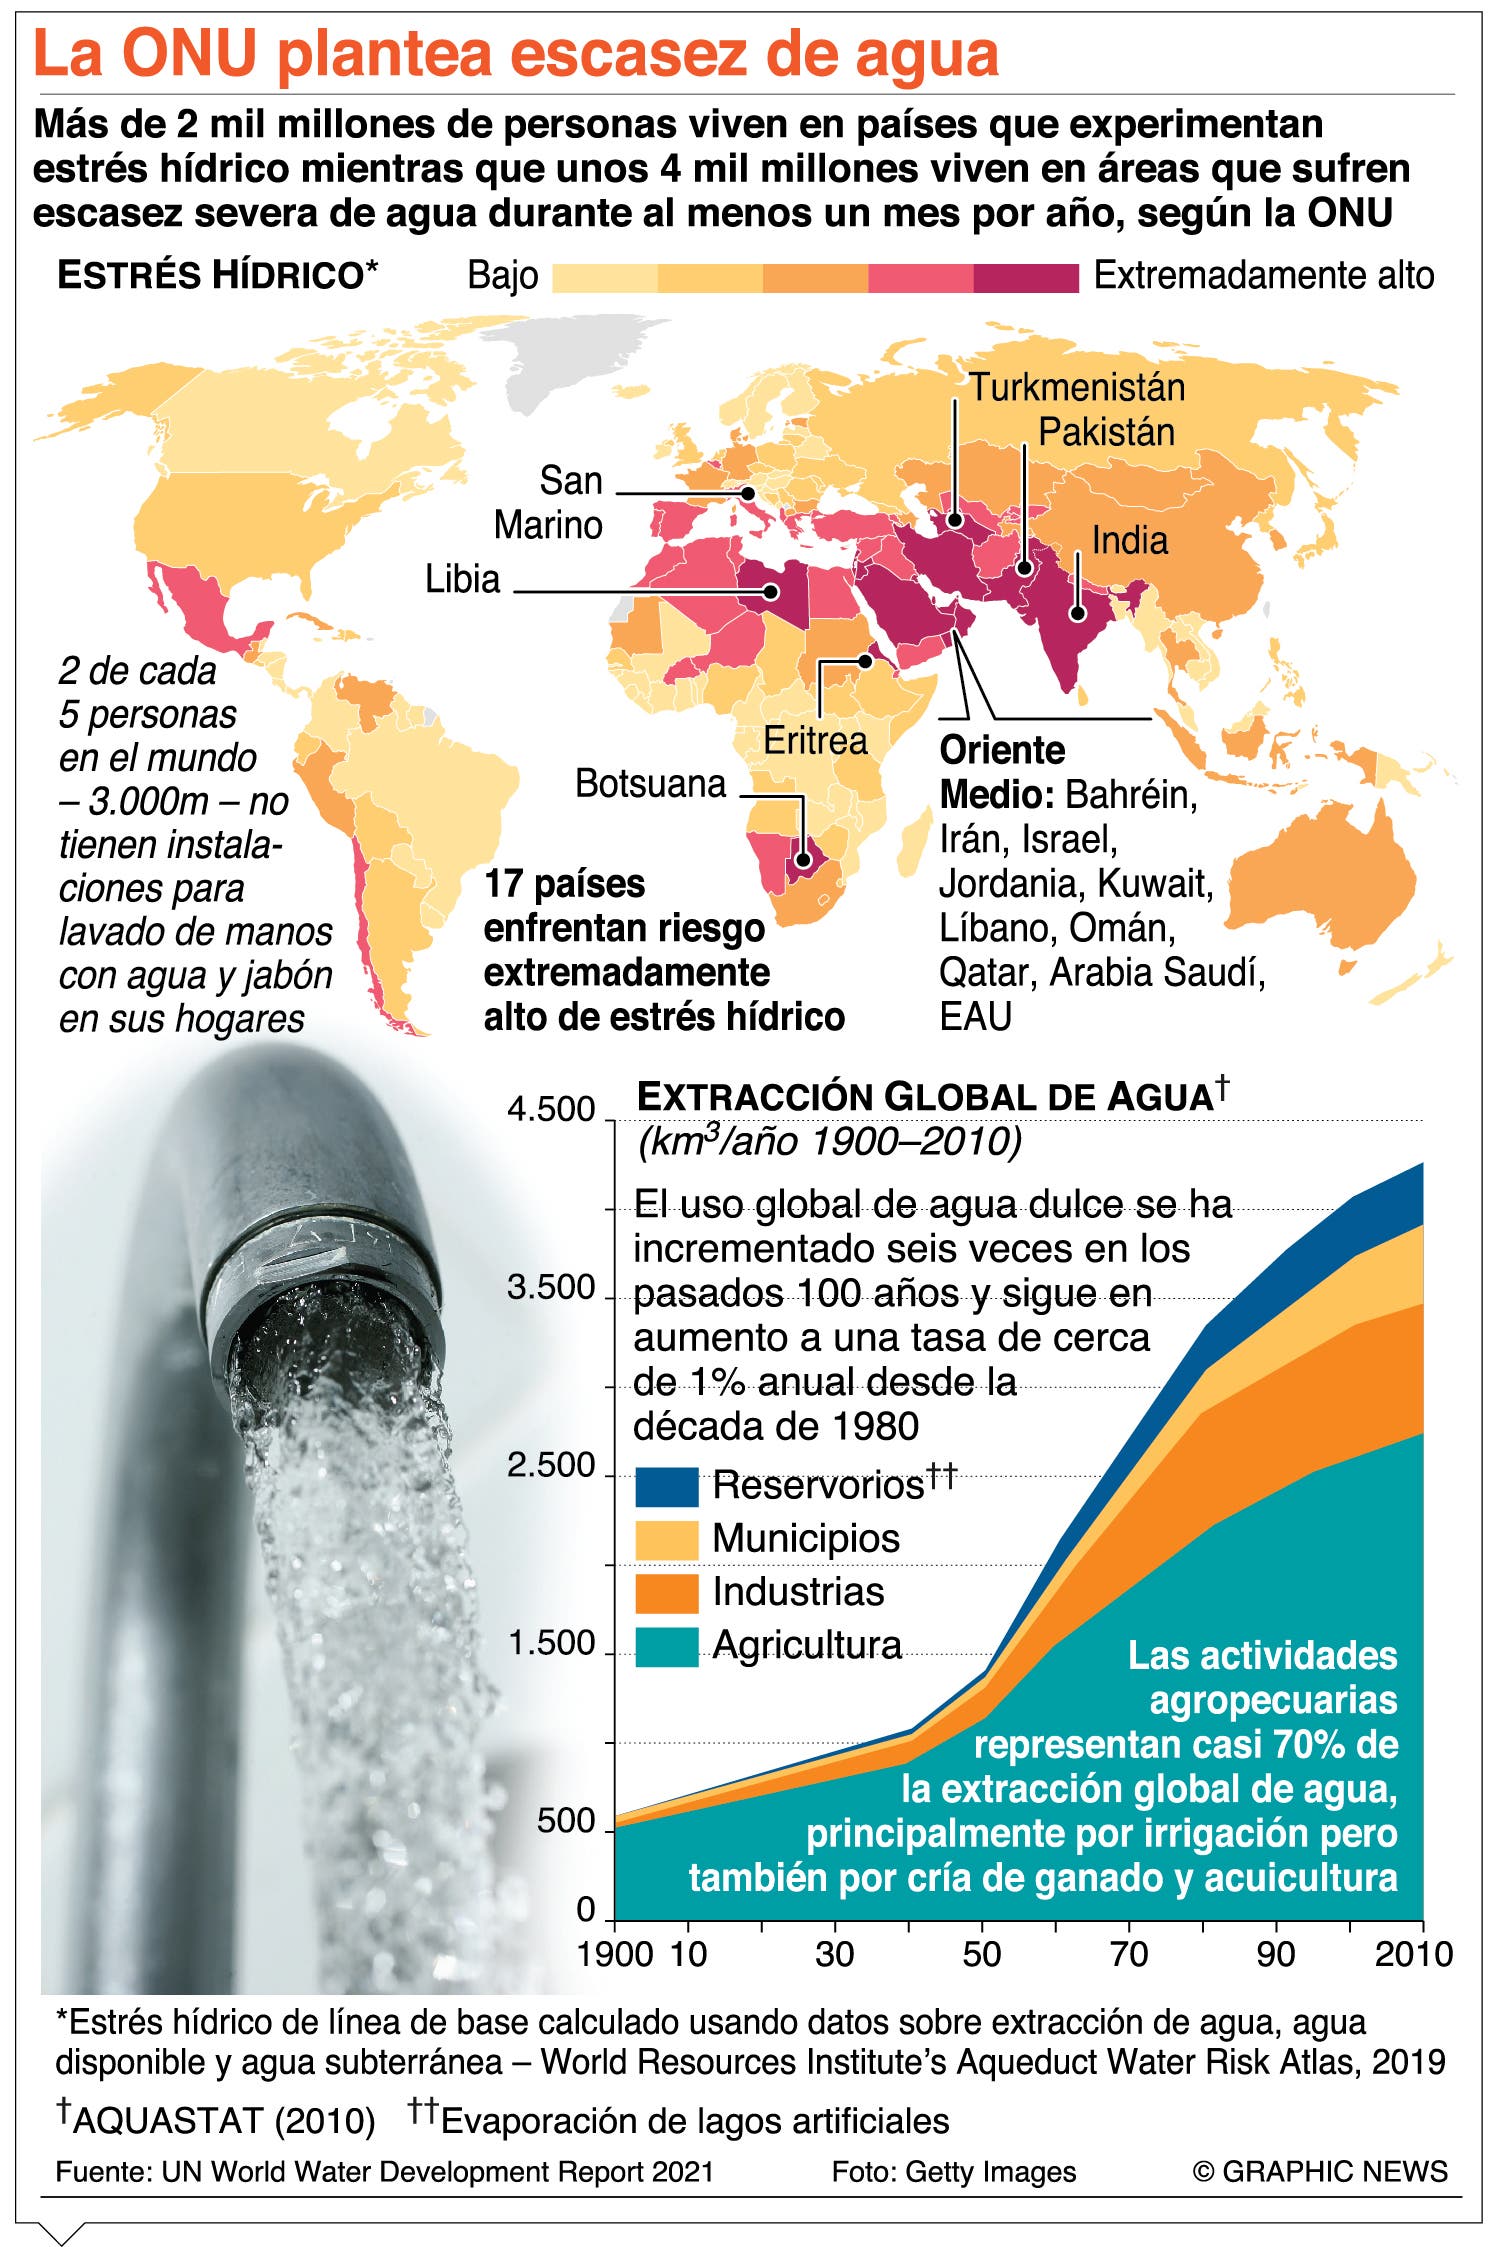 Somalia vive en condiciones extremas por escasez de agua